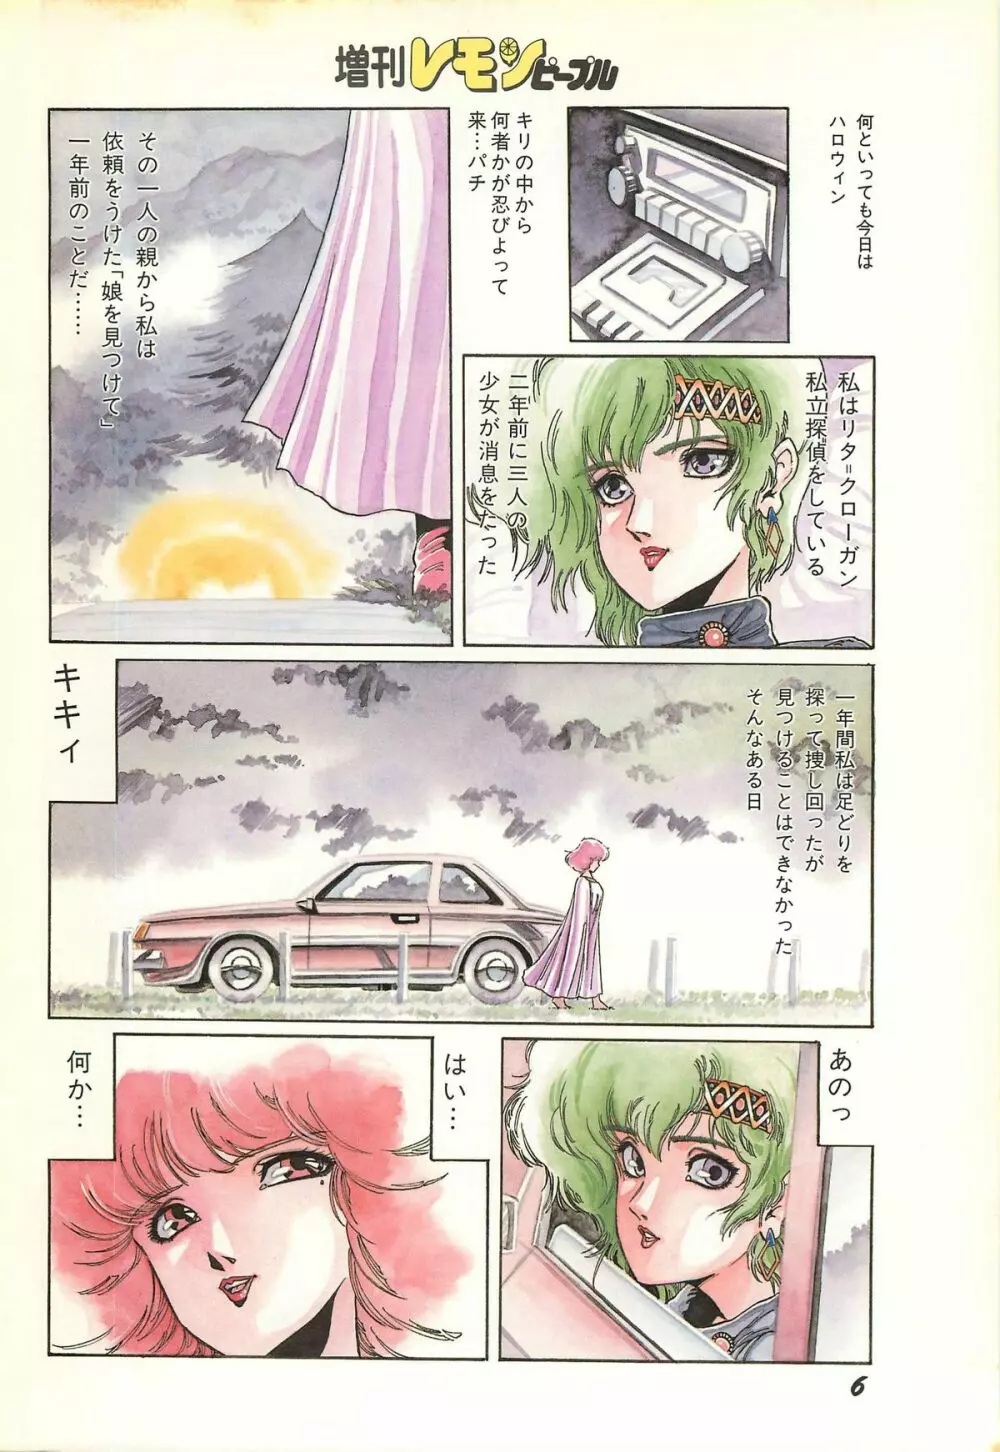 レモンピープル 1986年11月増刊号 Vol.65 オールカラー 8ページ